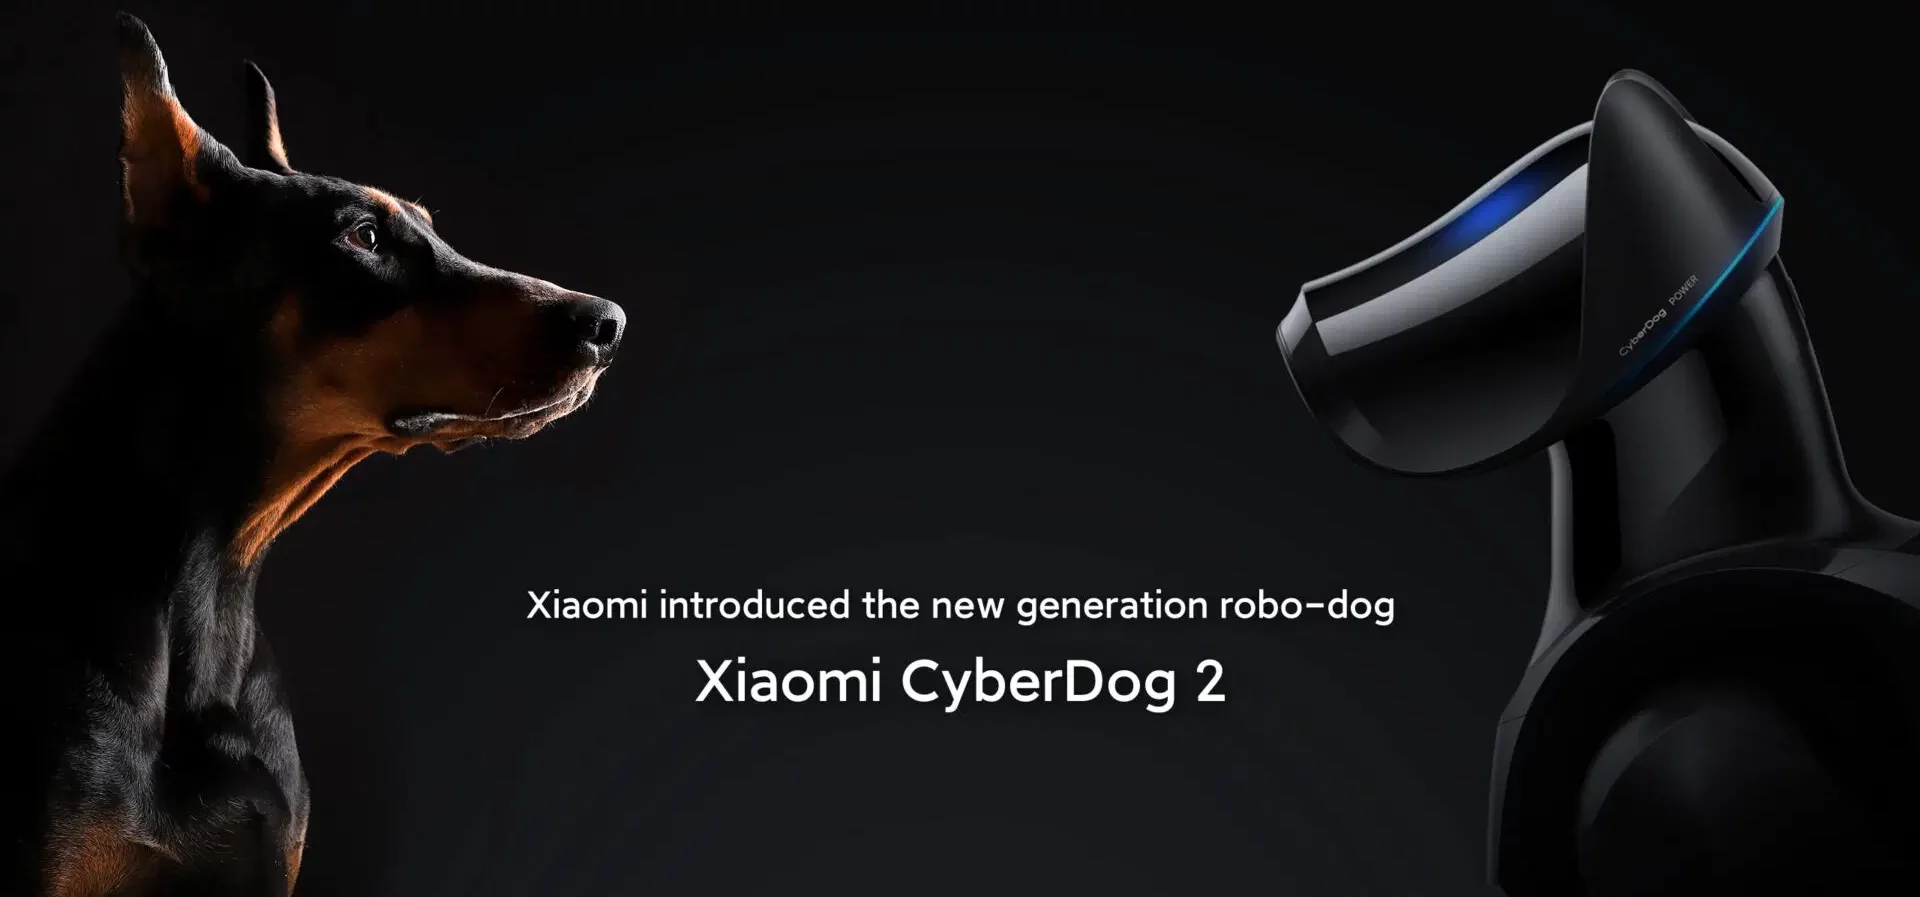 Xiaomi Cyberdog 2: A Glimpse into the Future of Robotics